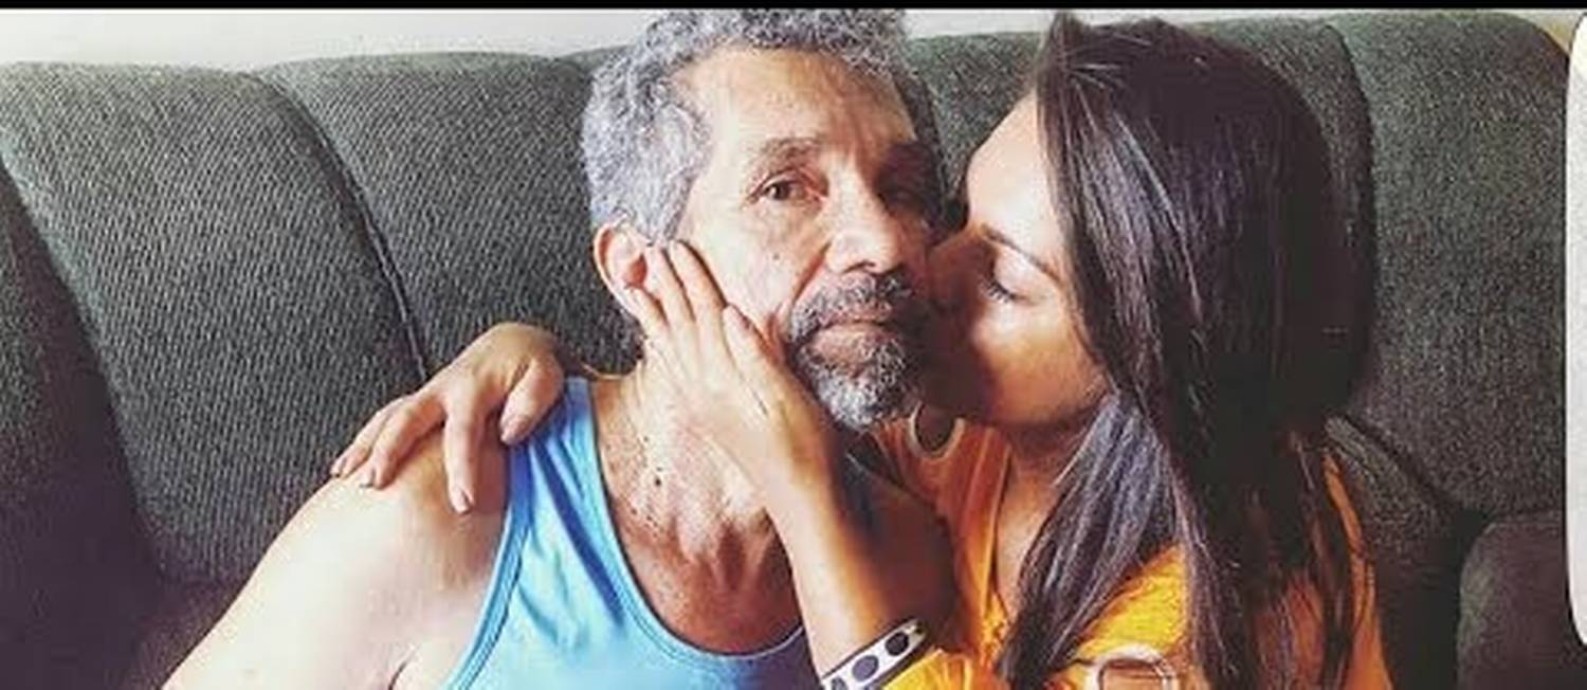 Paulinha Abelha com o pai, conhecido como Seu Abelha: os dois eram muito apegados, e ela se responsabilizava pelos cuidados médicos dele Foto: Reprodução / Facebook